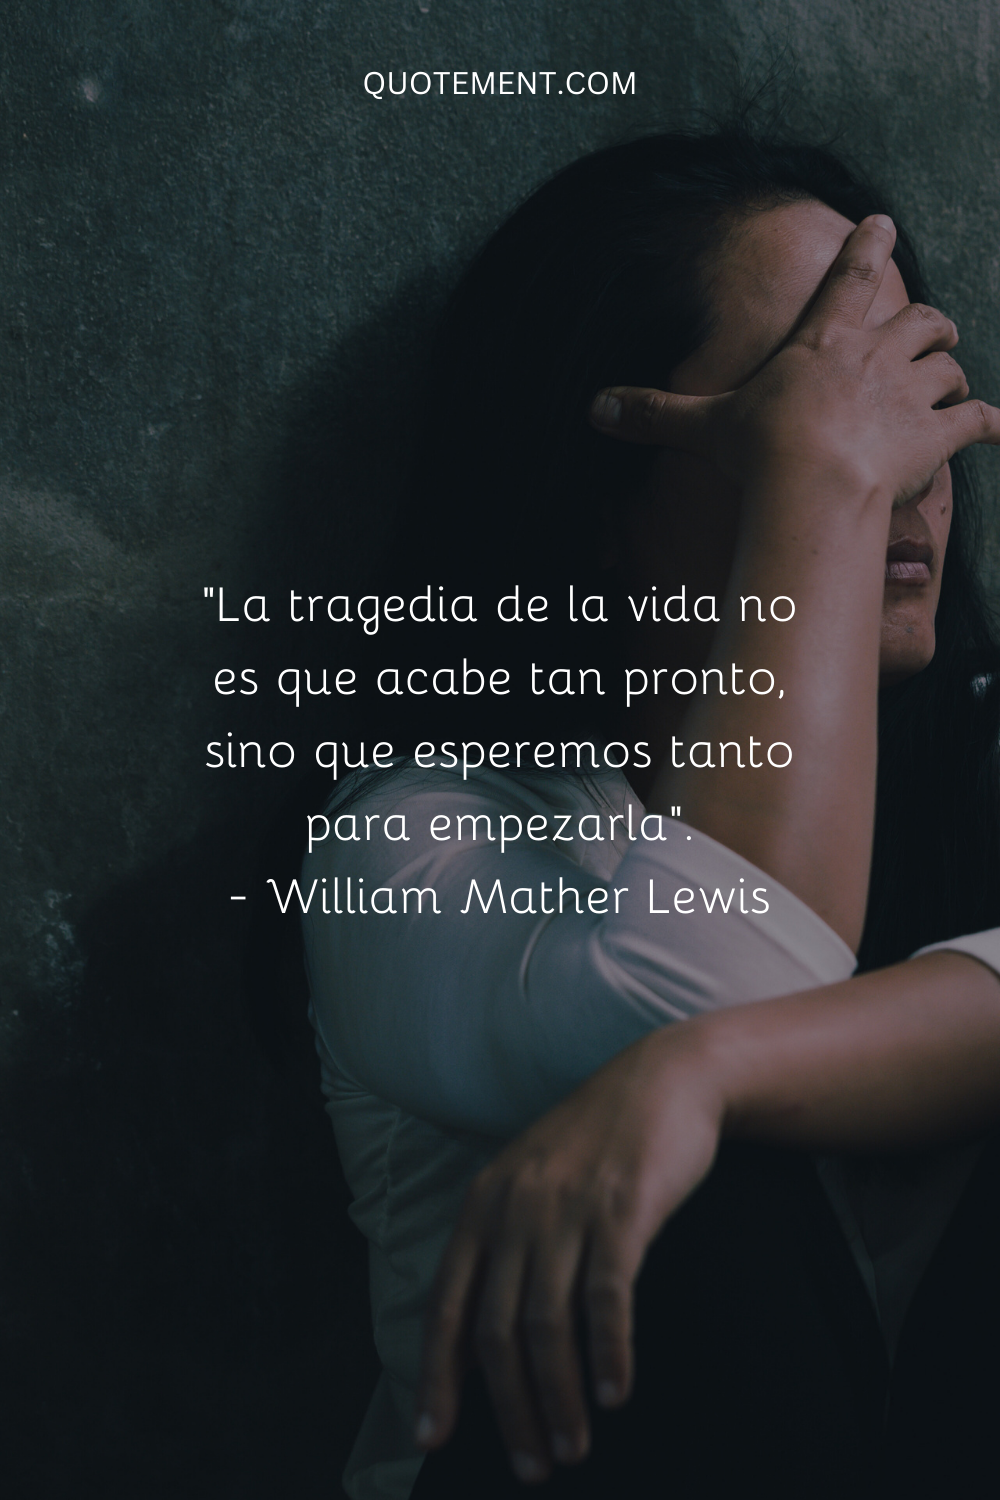 "La tragedia de la vida no es que termine tan pronto, sino que esperemos tanto para empezarla". - William Mather Lewis